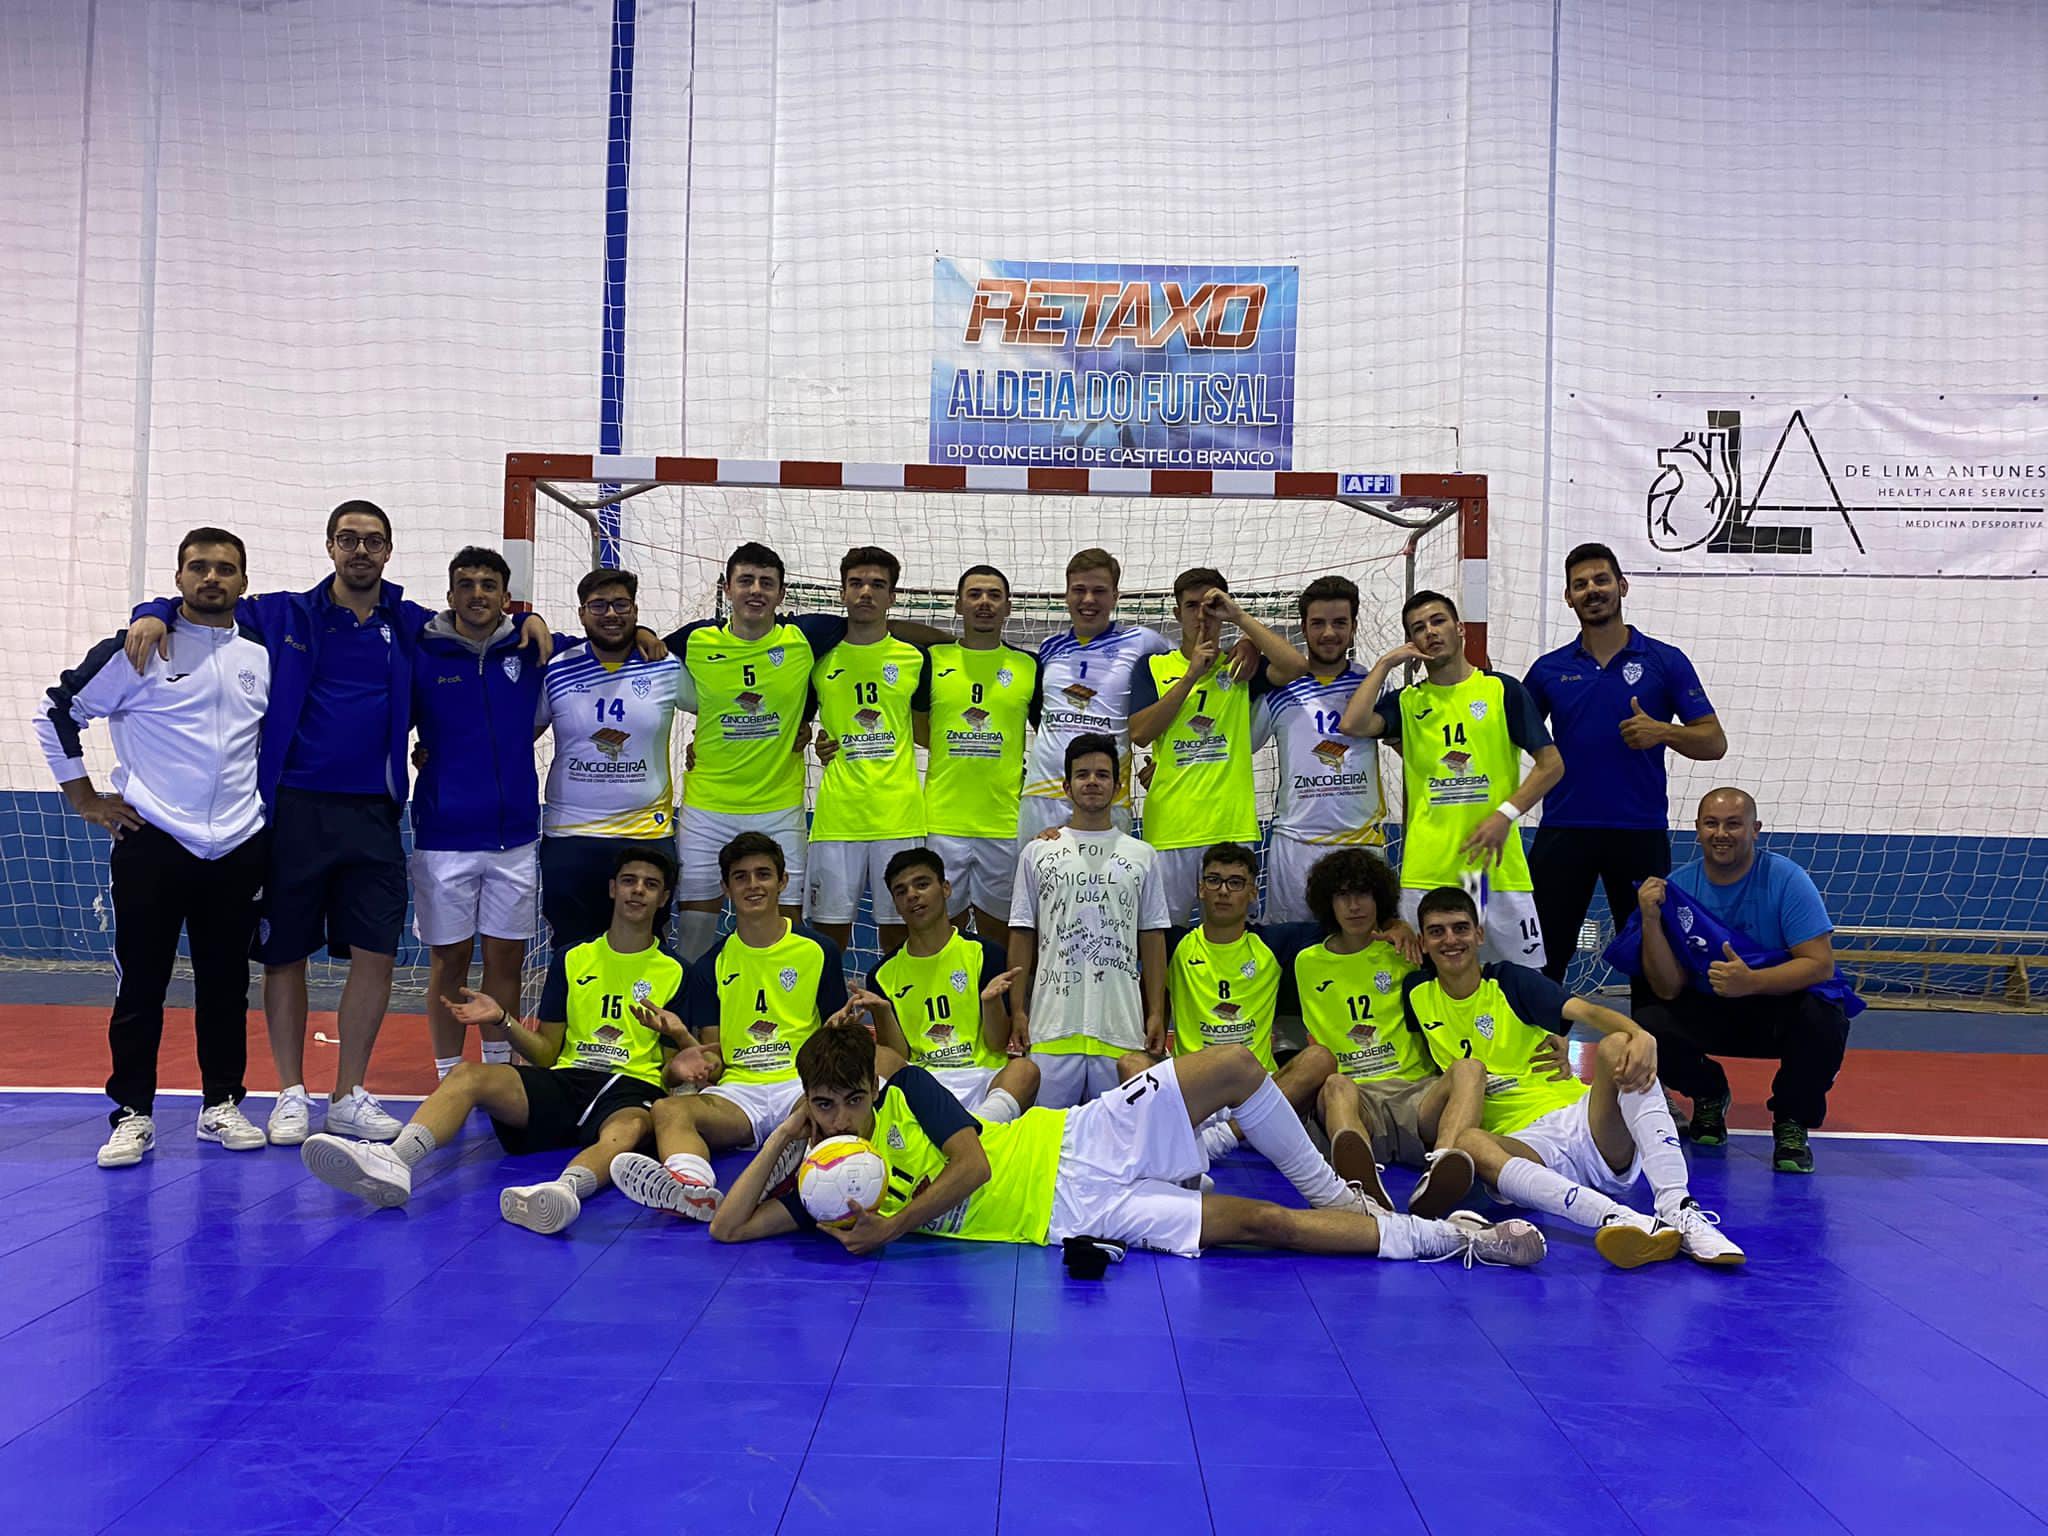 Juniores Futsal: ADR Retaxo conquista Torneio de Encerramento